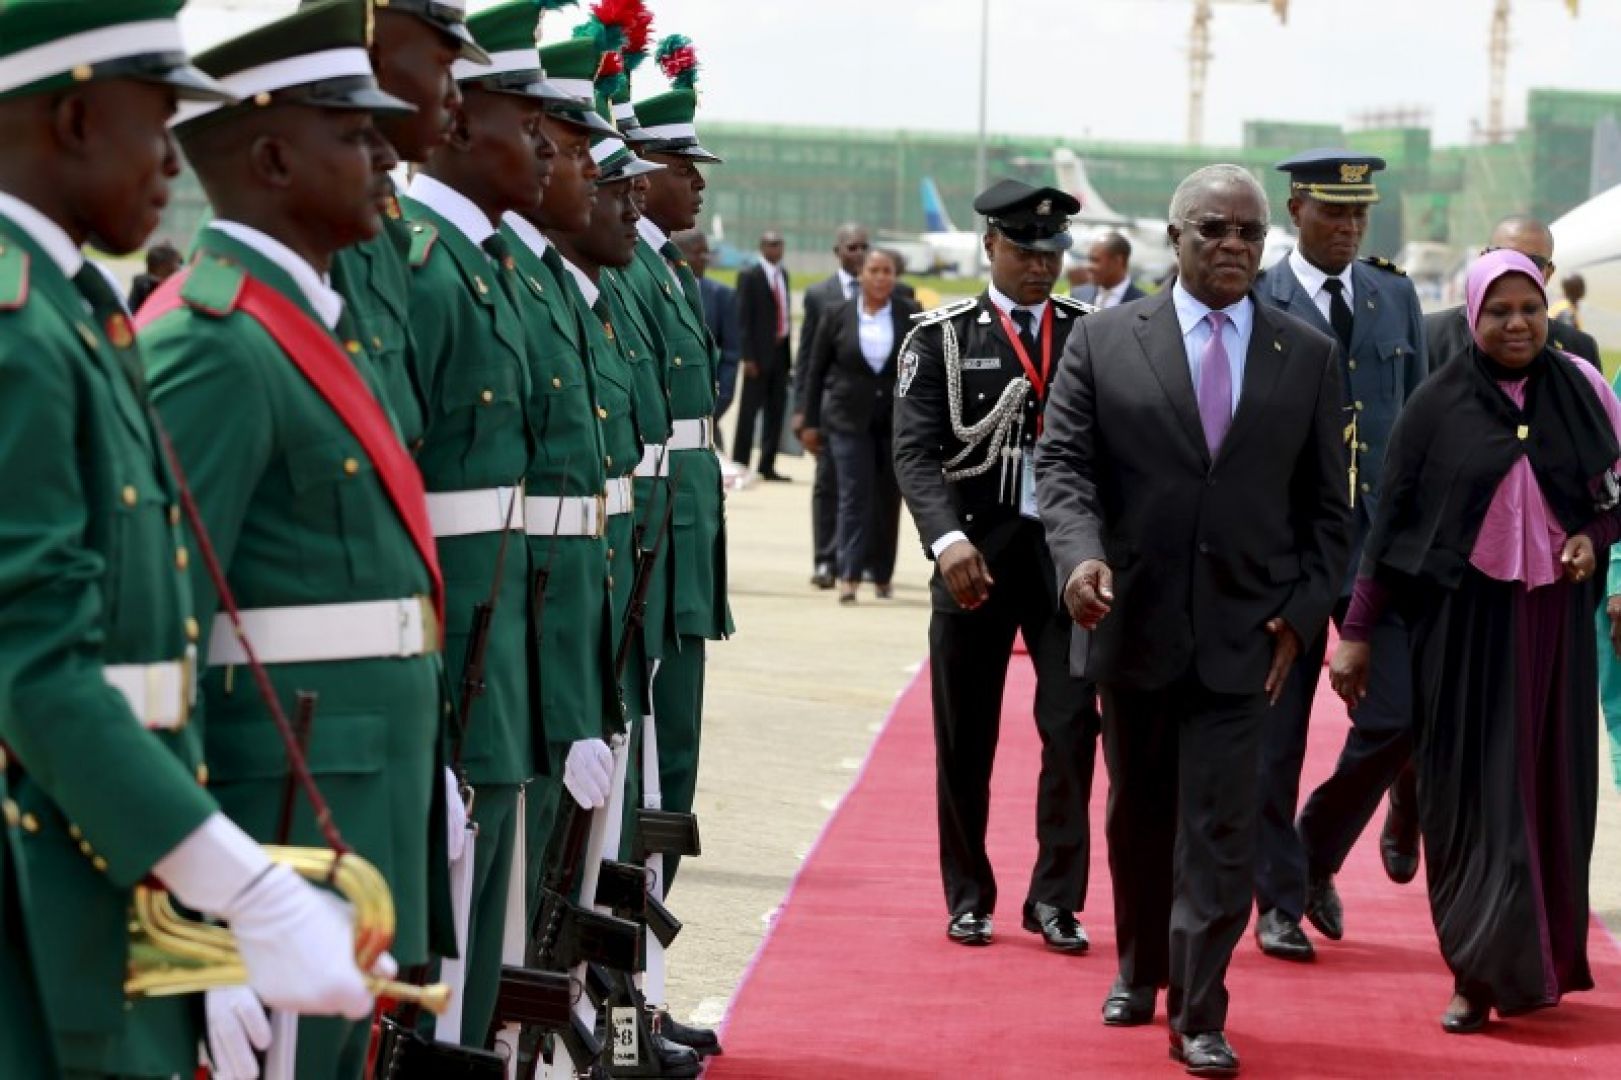 Sao Tome Votes as President Da Costa Runs For Second Term